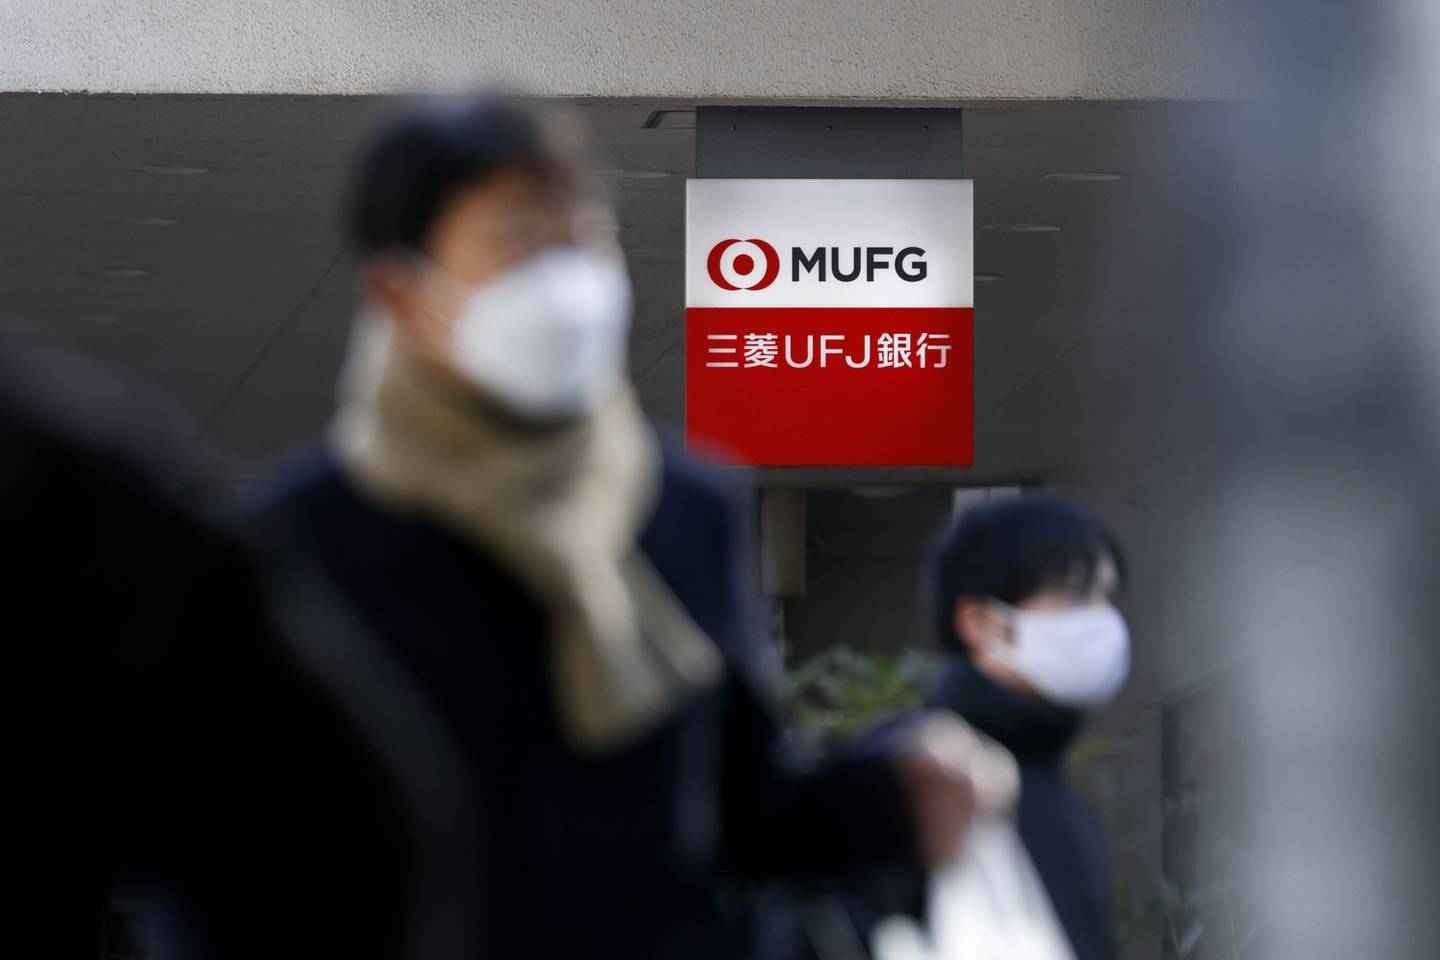 MUFG también está comprobando que los gestores de patrimonio de la correduría -una de las dos empresas conjuntas entre la institución japonesa y el Morgan Stanley- explicaron adecuadamente a los compradores los riesgos asociados a la deuda, dijo el portavoz.